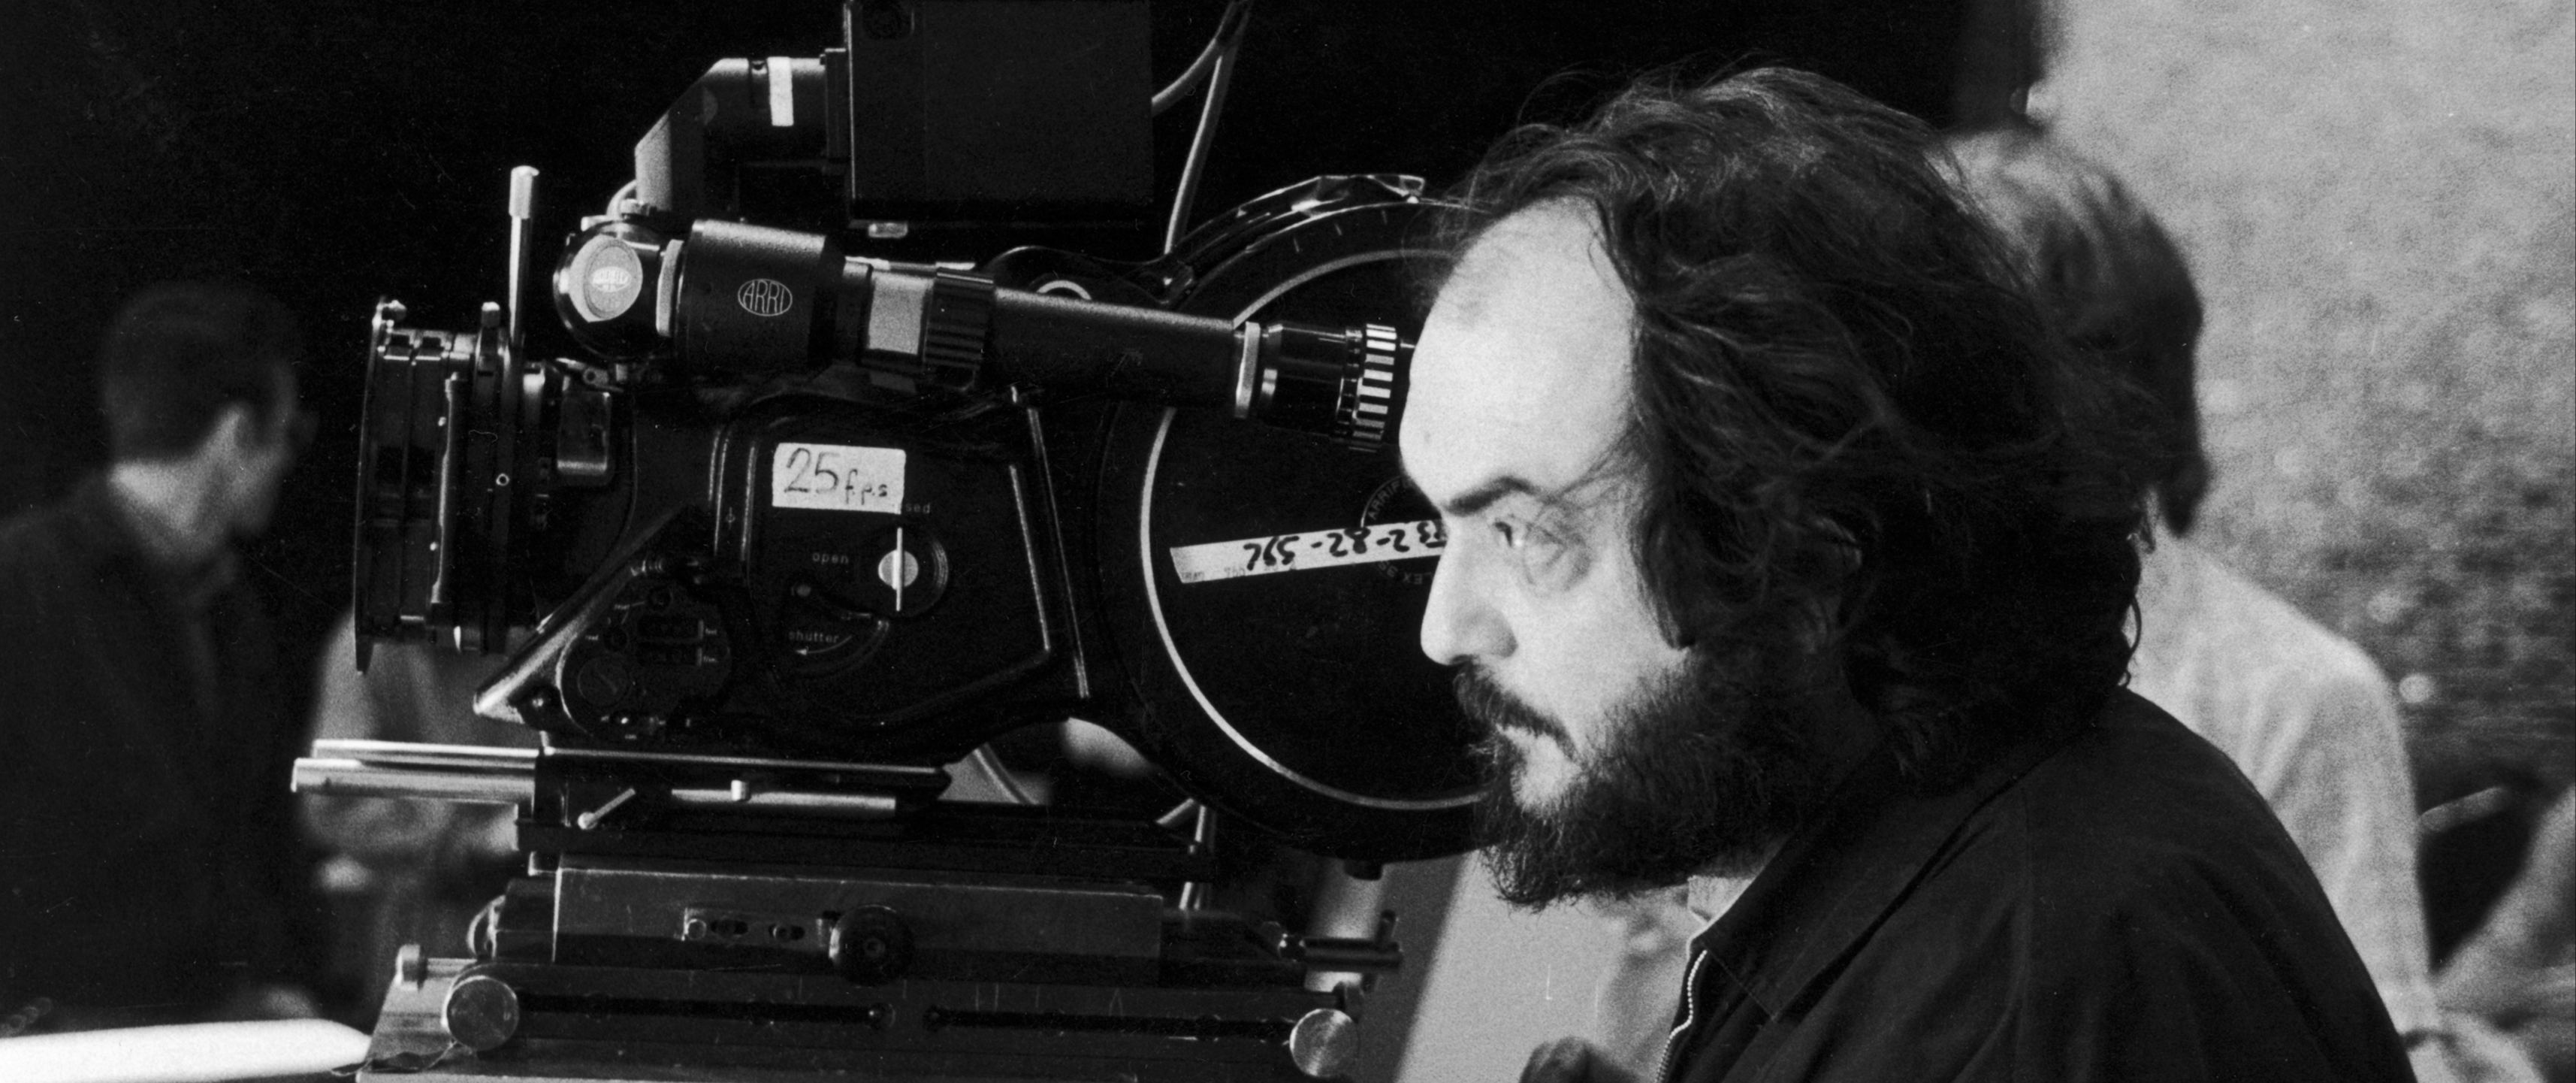 Kubrick par Kubrick